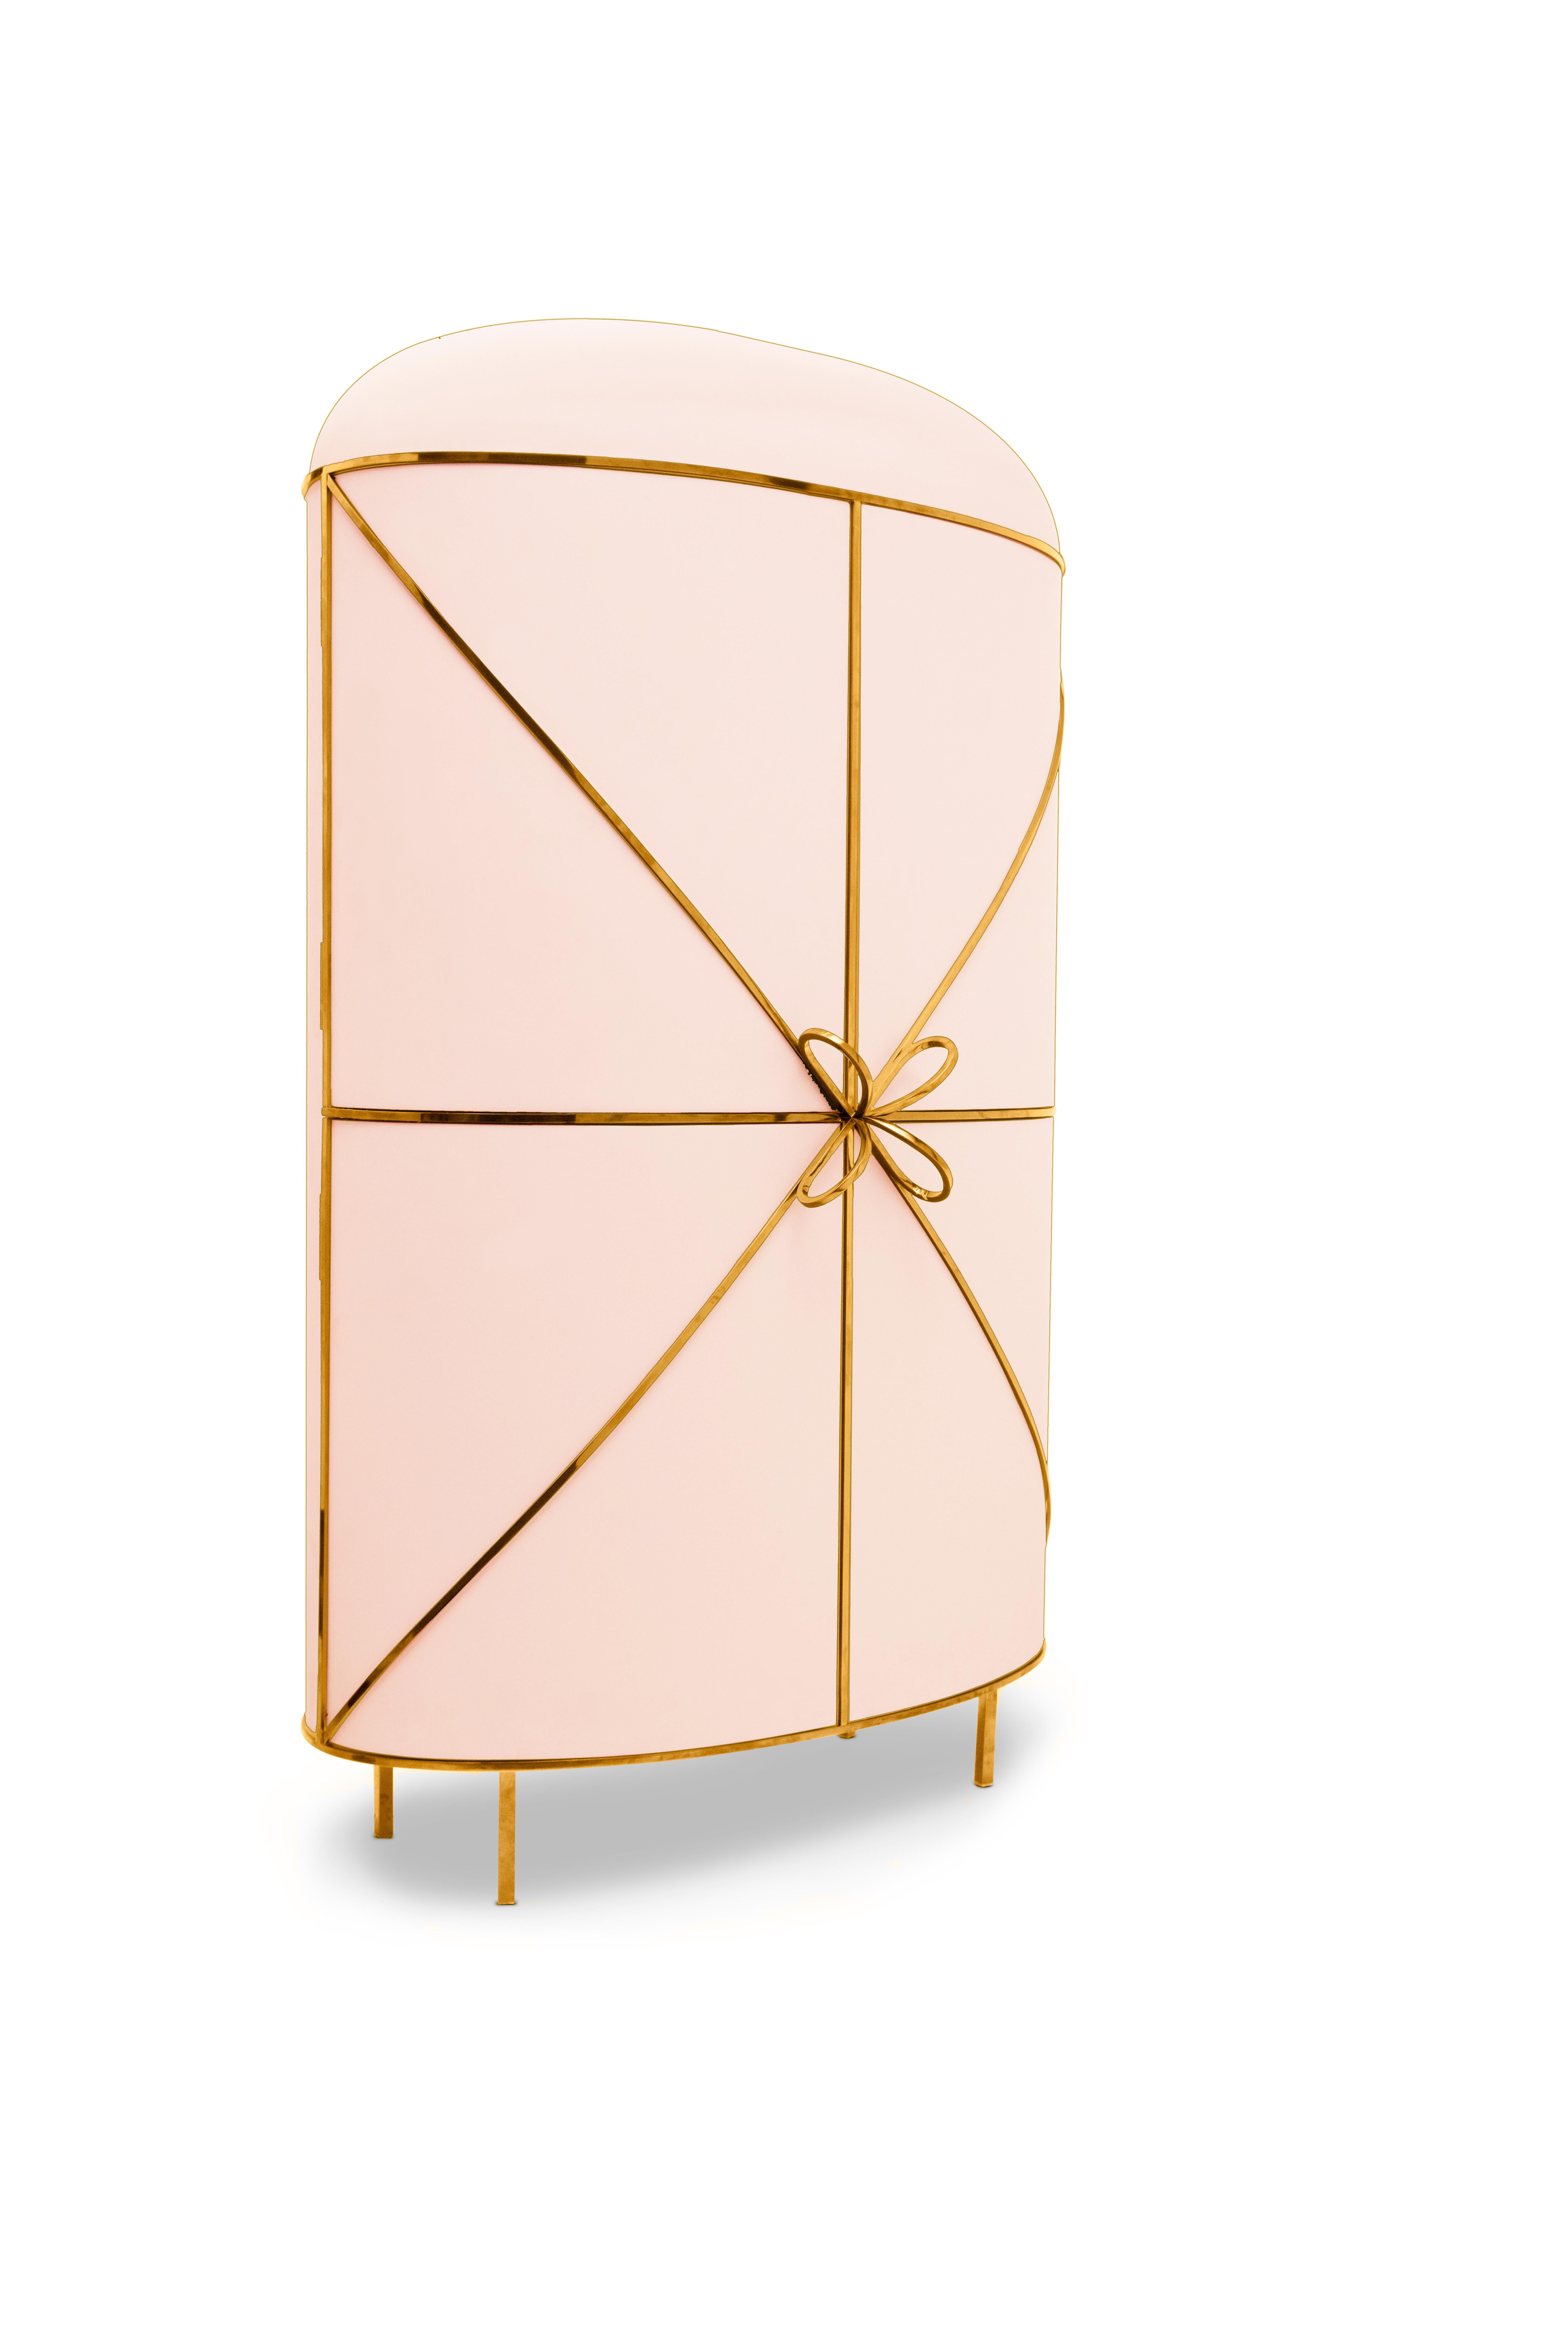 88 Secrets Pink Bar Cabinet with Gold Trims von Nika Zupanc ist ein schicker pinker Barschrank mit sinnlichen, femininen Linien und luxuriösen goldenen Metallverzierungen. Ein Blickfang in jedem Innenraum!

Nika Zupanc, eine auffallend renommierte